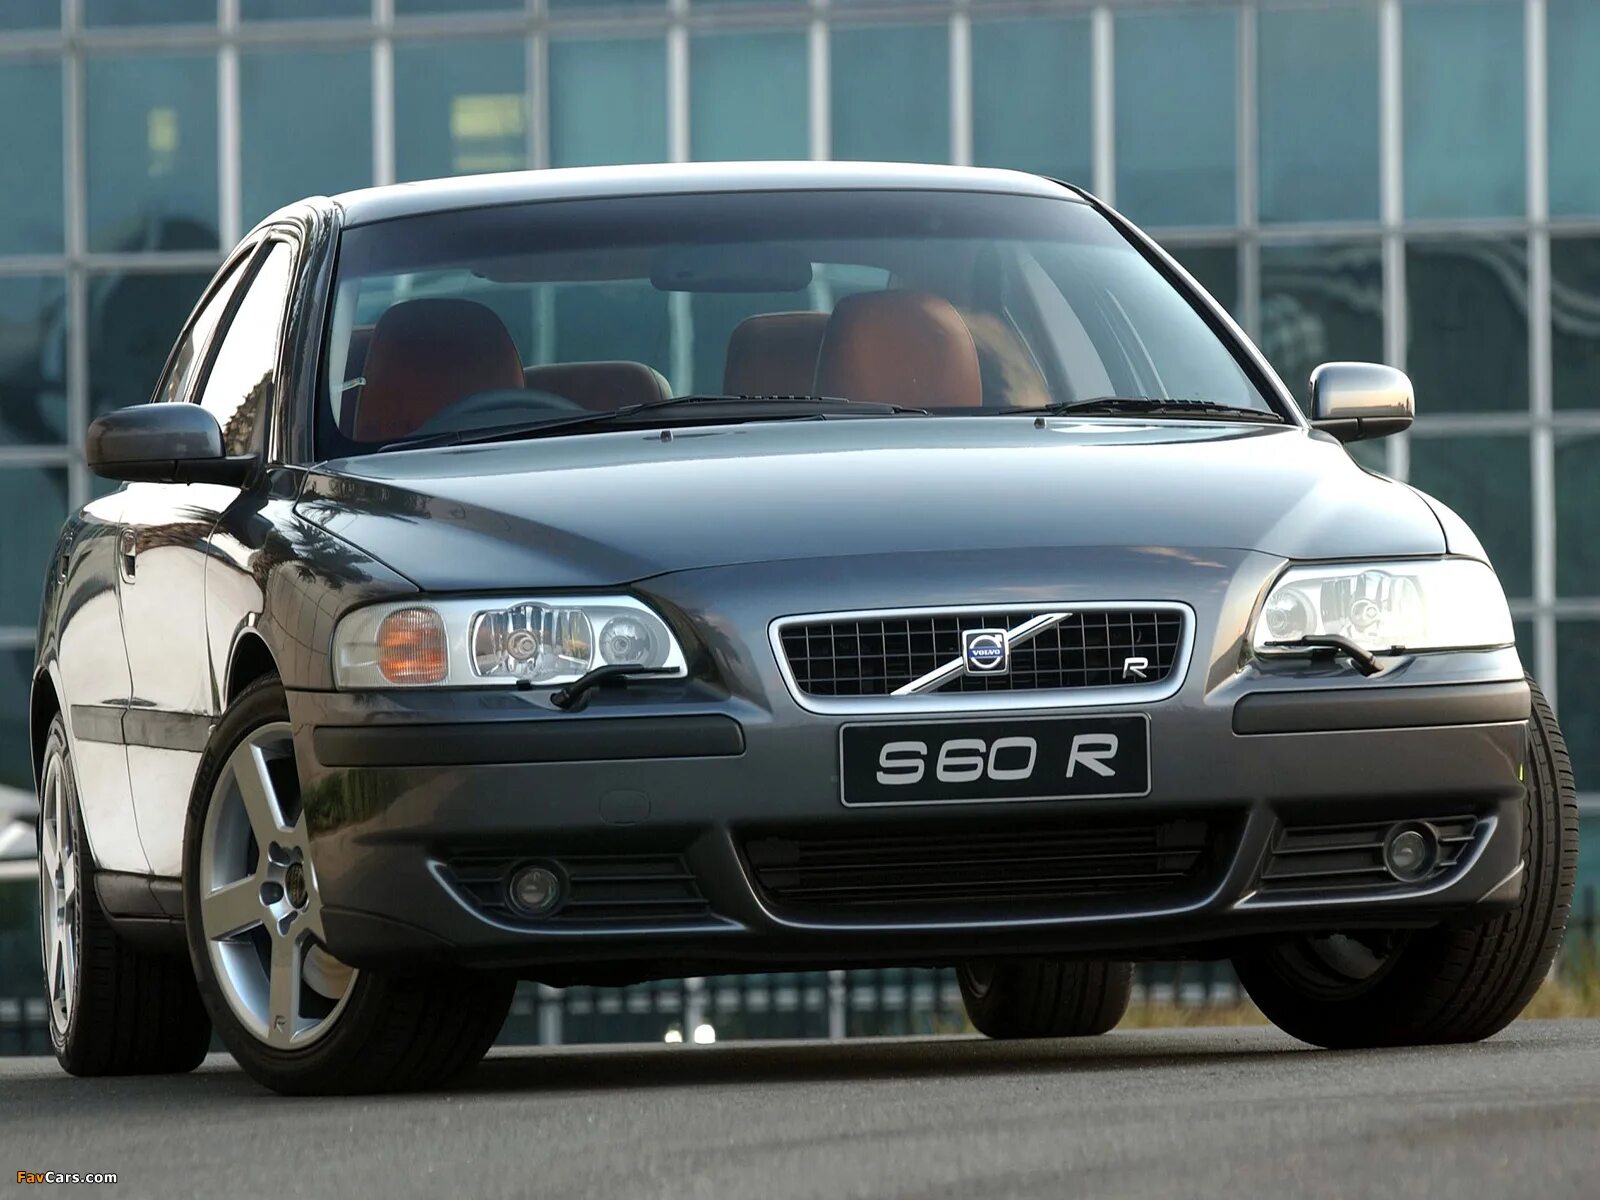 Volvo s60 2004. Volvo s60r. Volvo s60 r 2004. Volvo s60r 2008. Volvo s60r 2007.